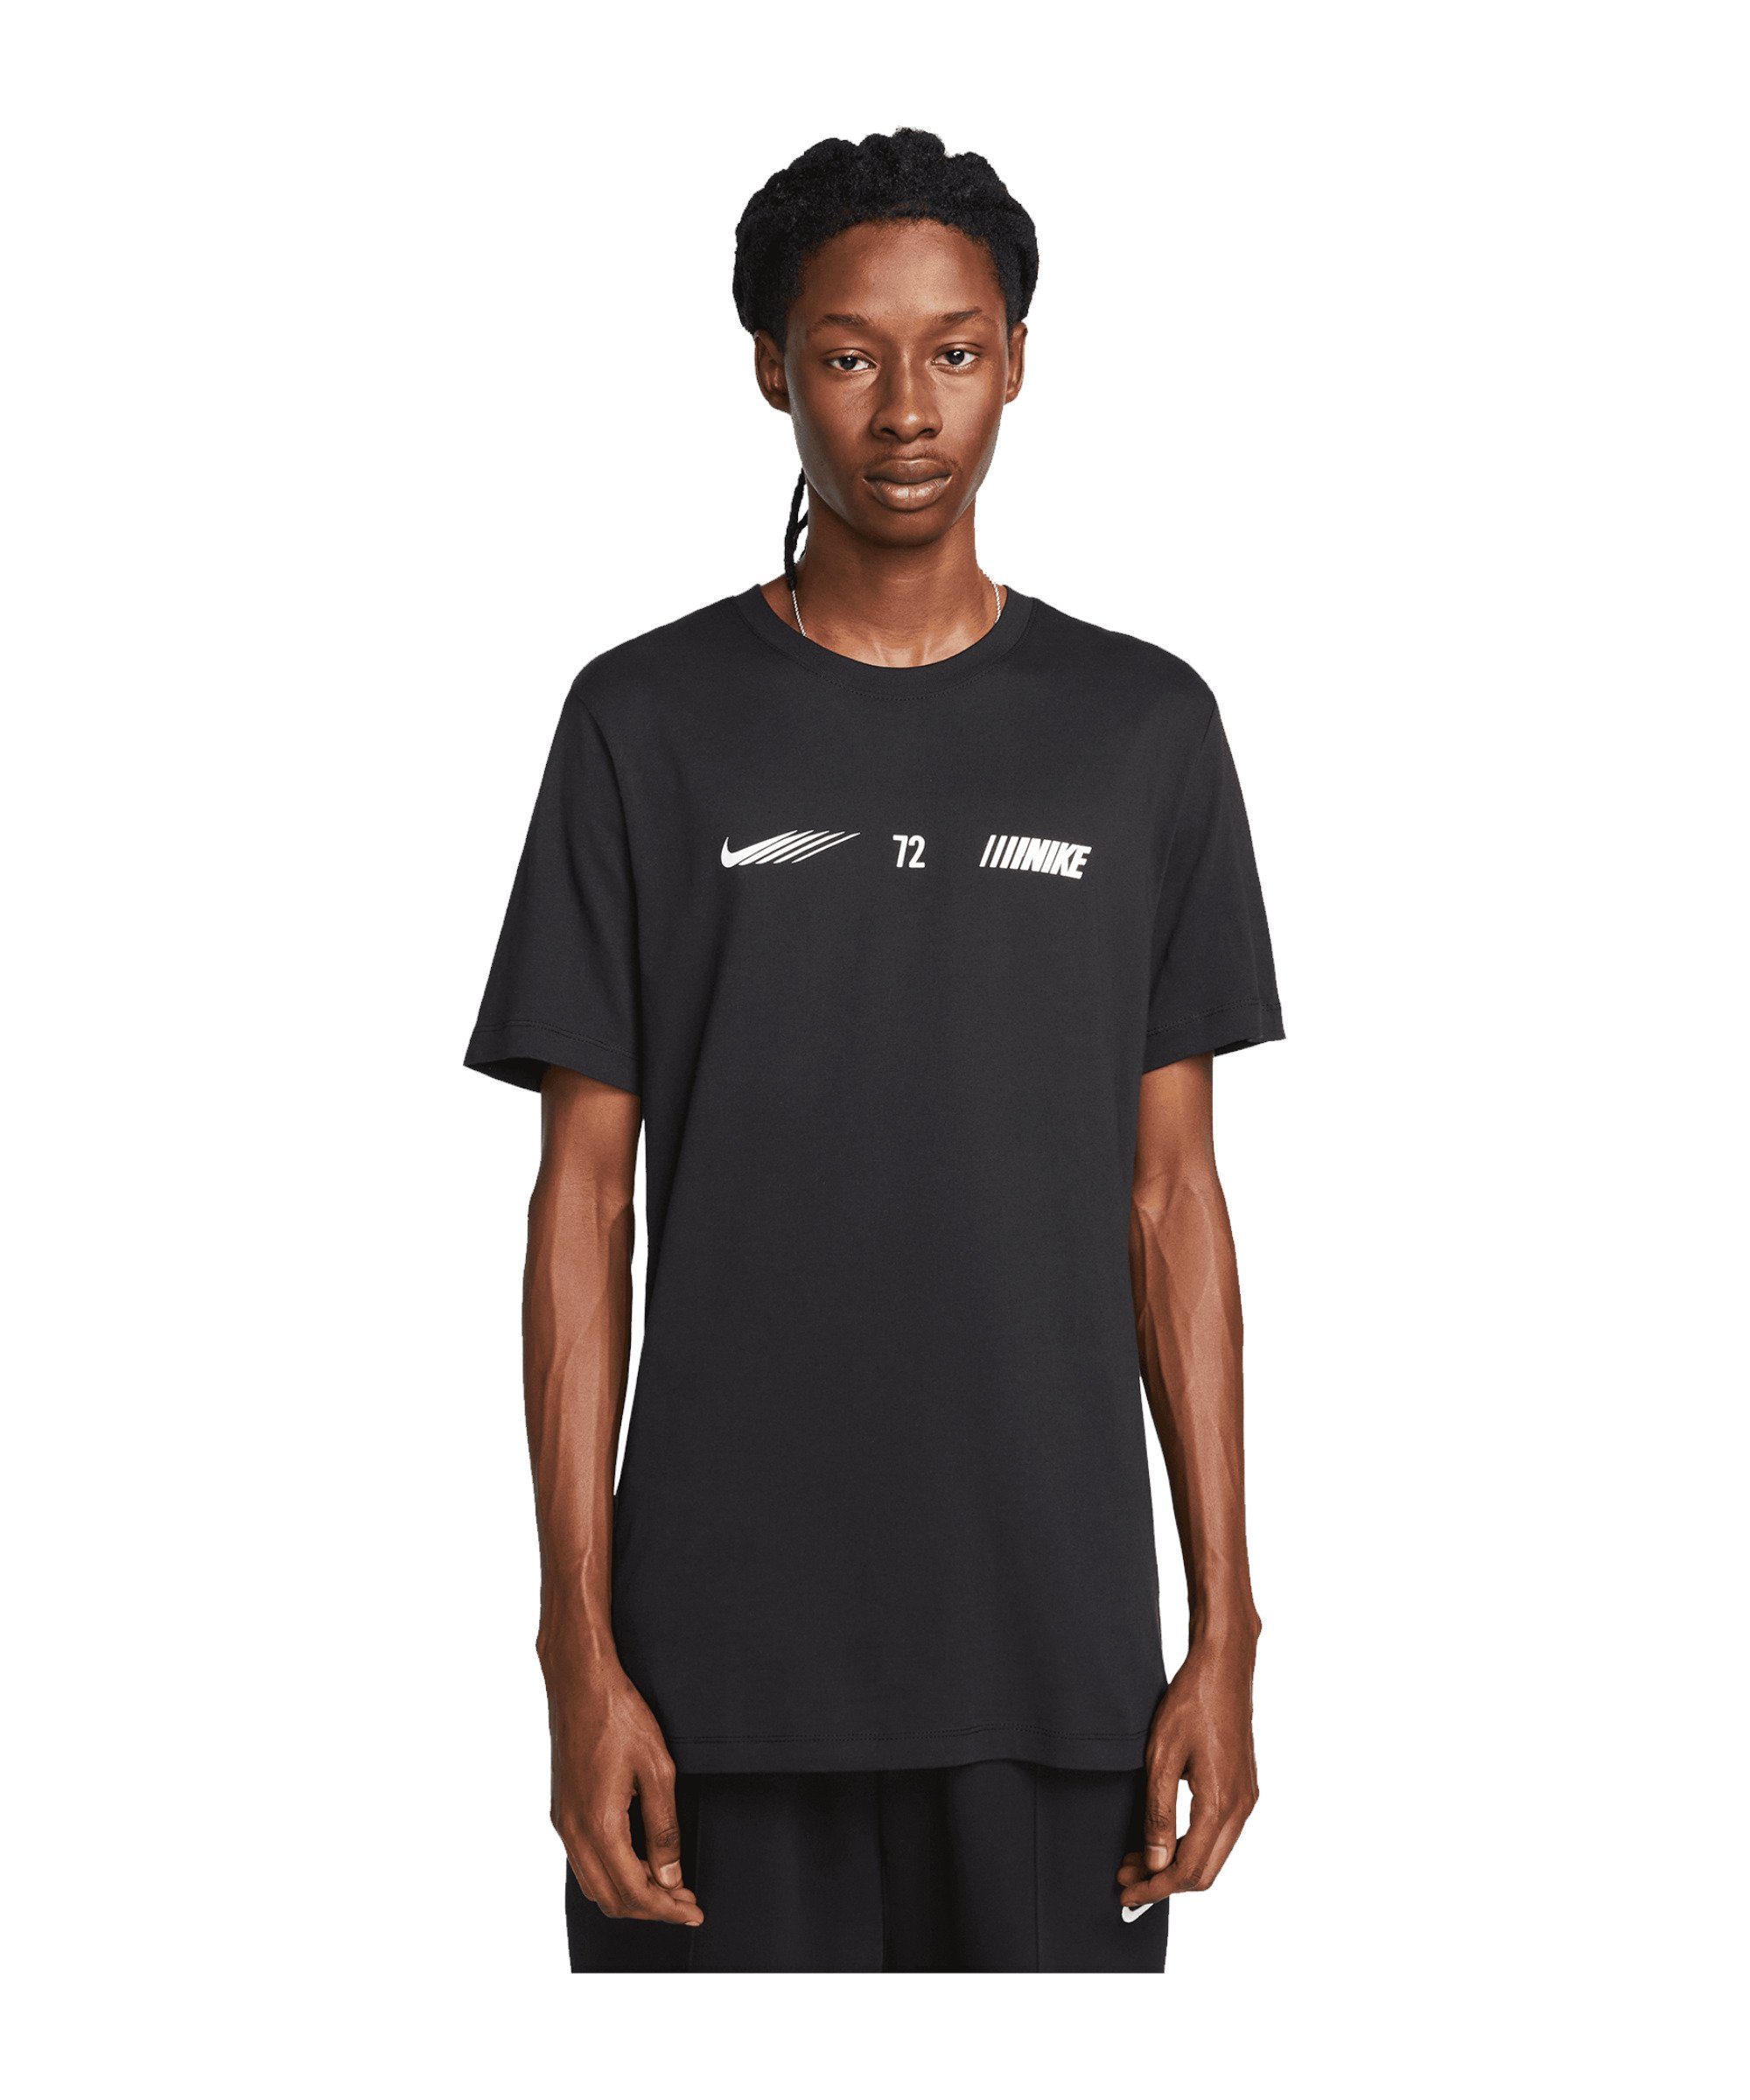 Nike Sportswear T-Shirt Standart schwarz T-Shirt Issue default